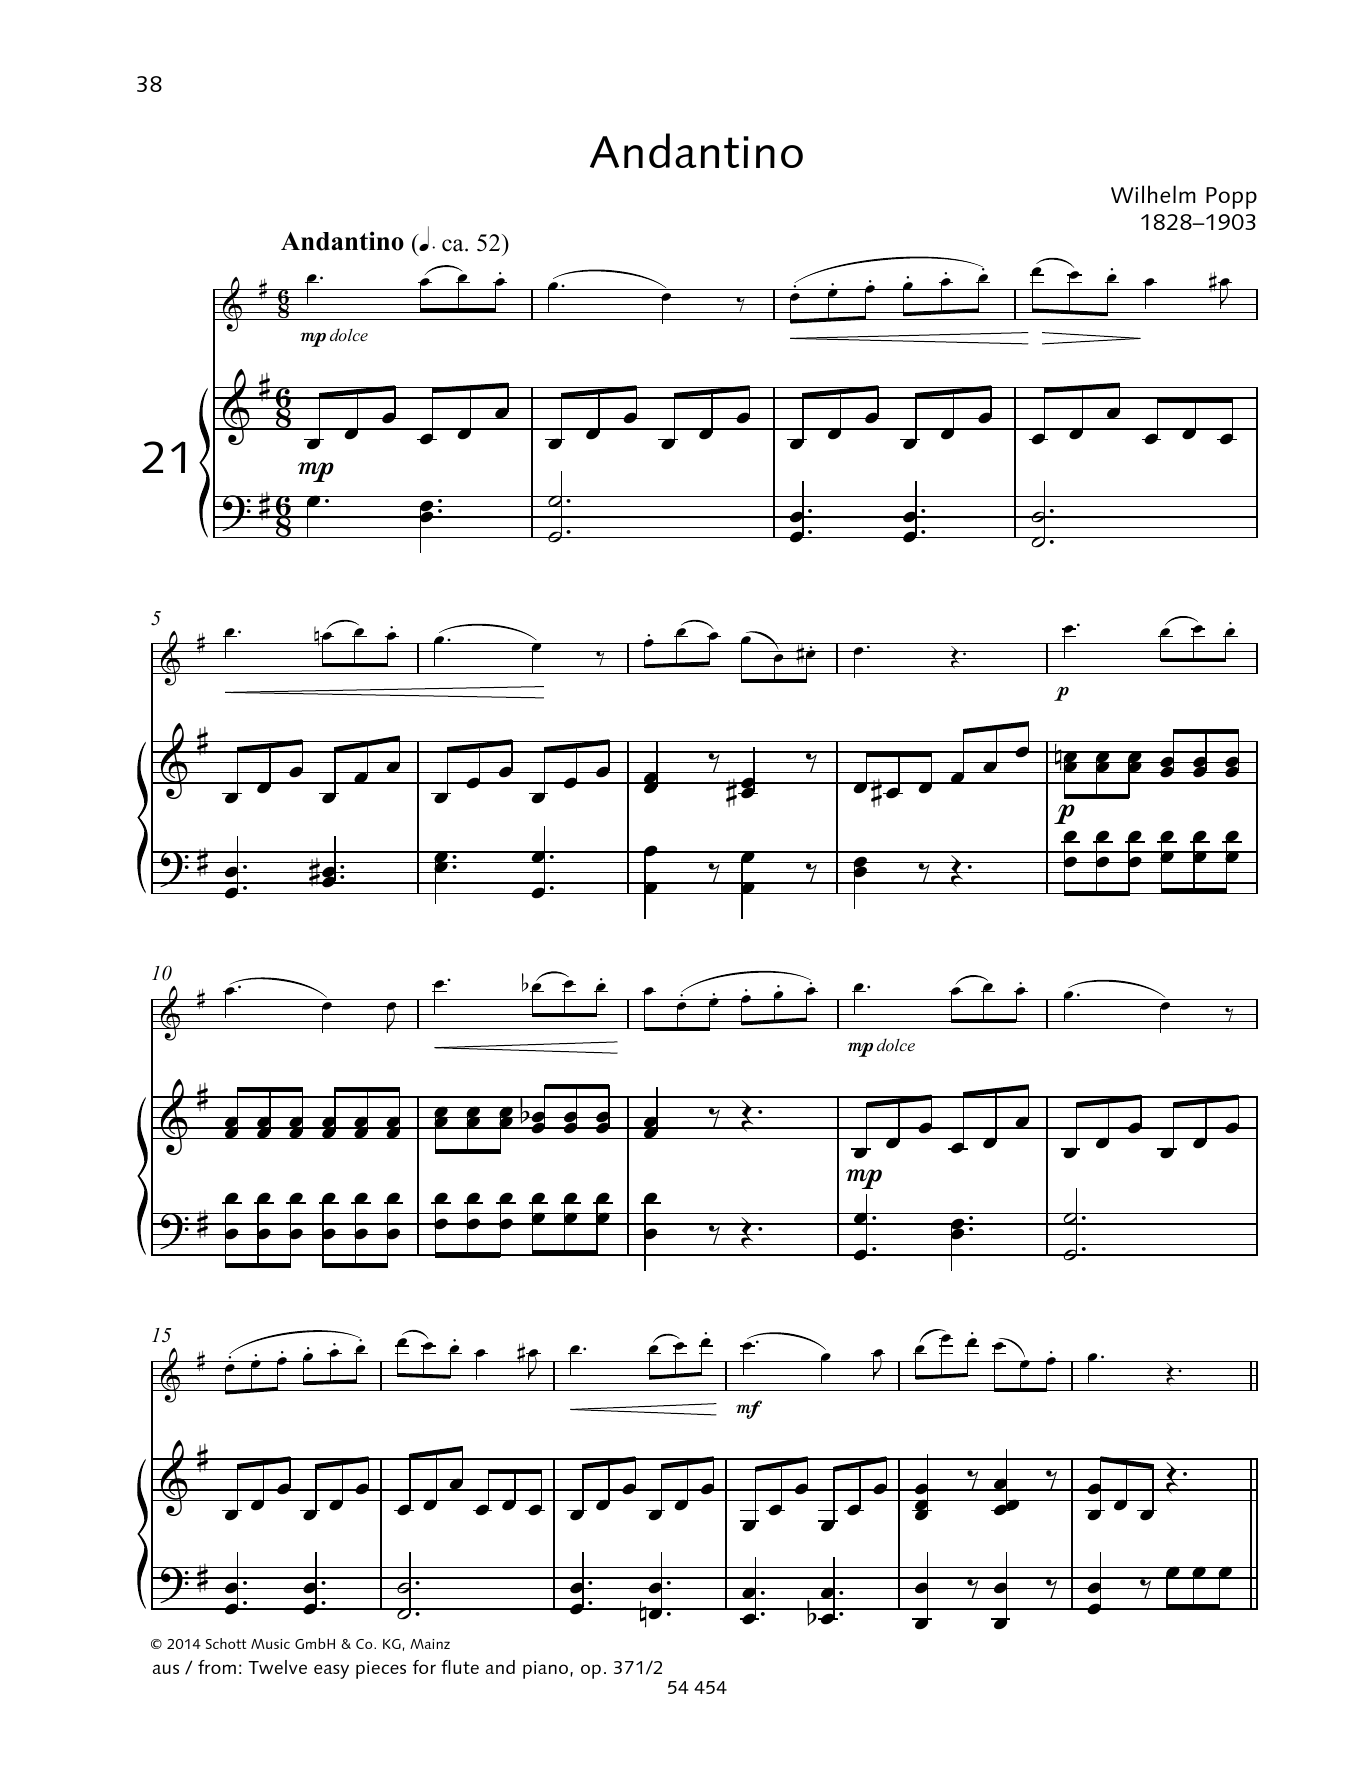 Download Wilhelm Popp Andantino Sheet Music